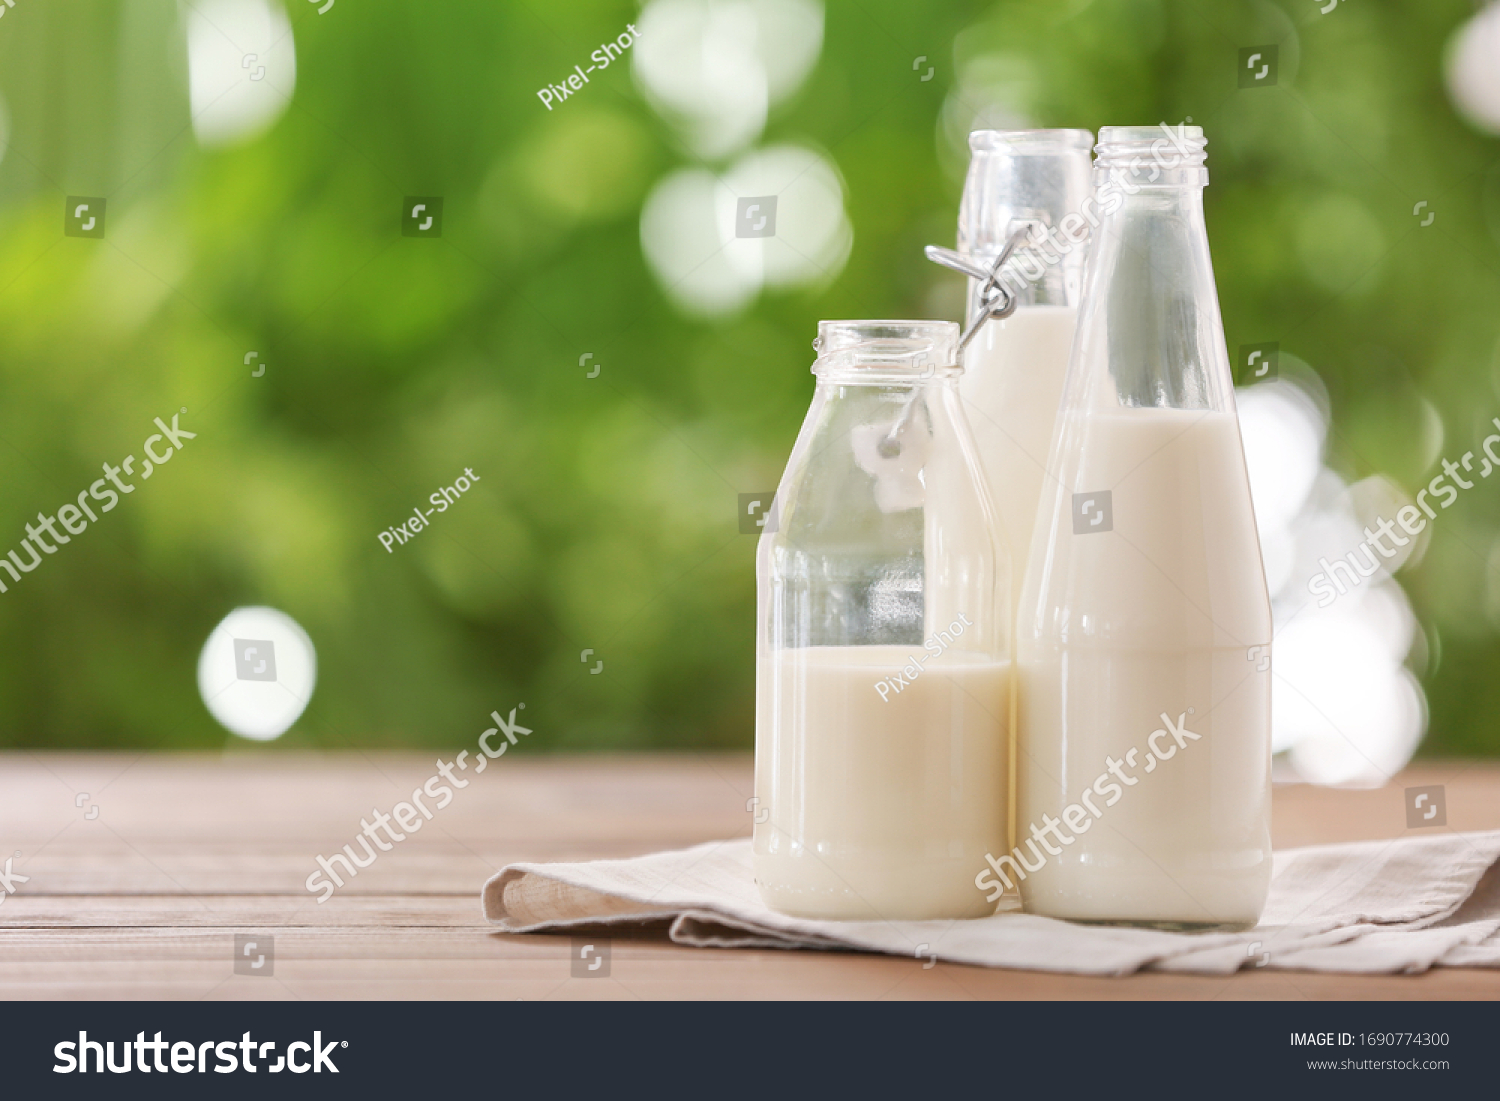 Bottles of fresh milk on table outdoors #1690774300